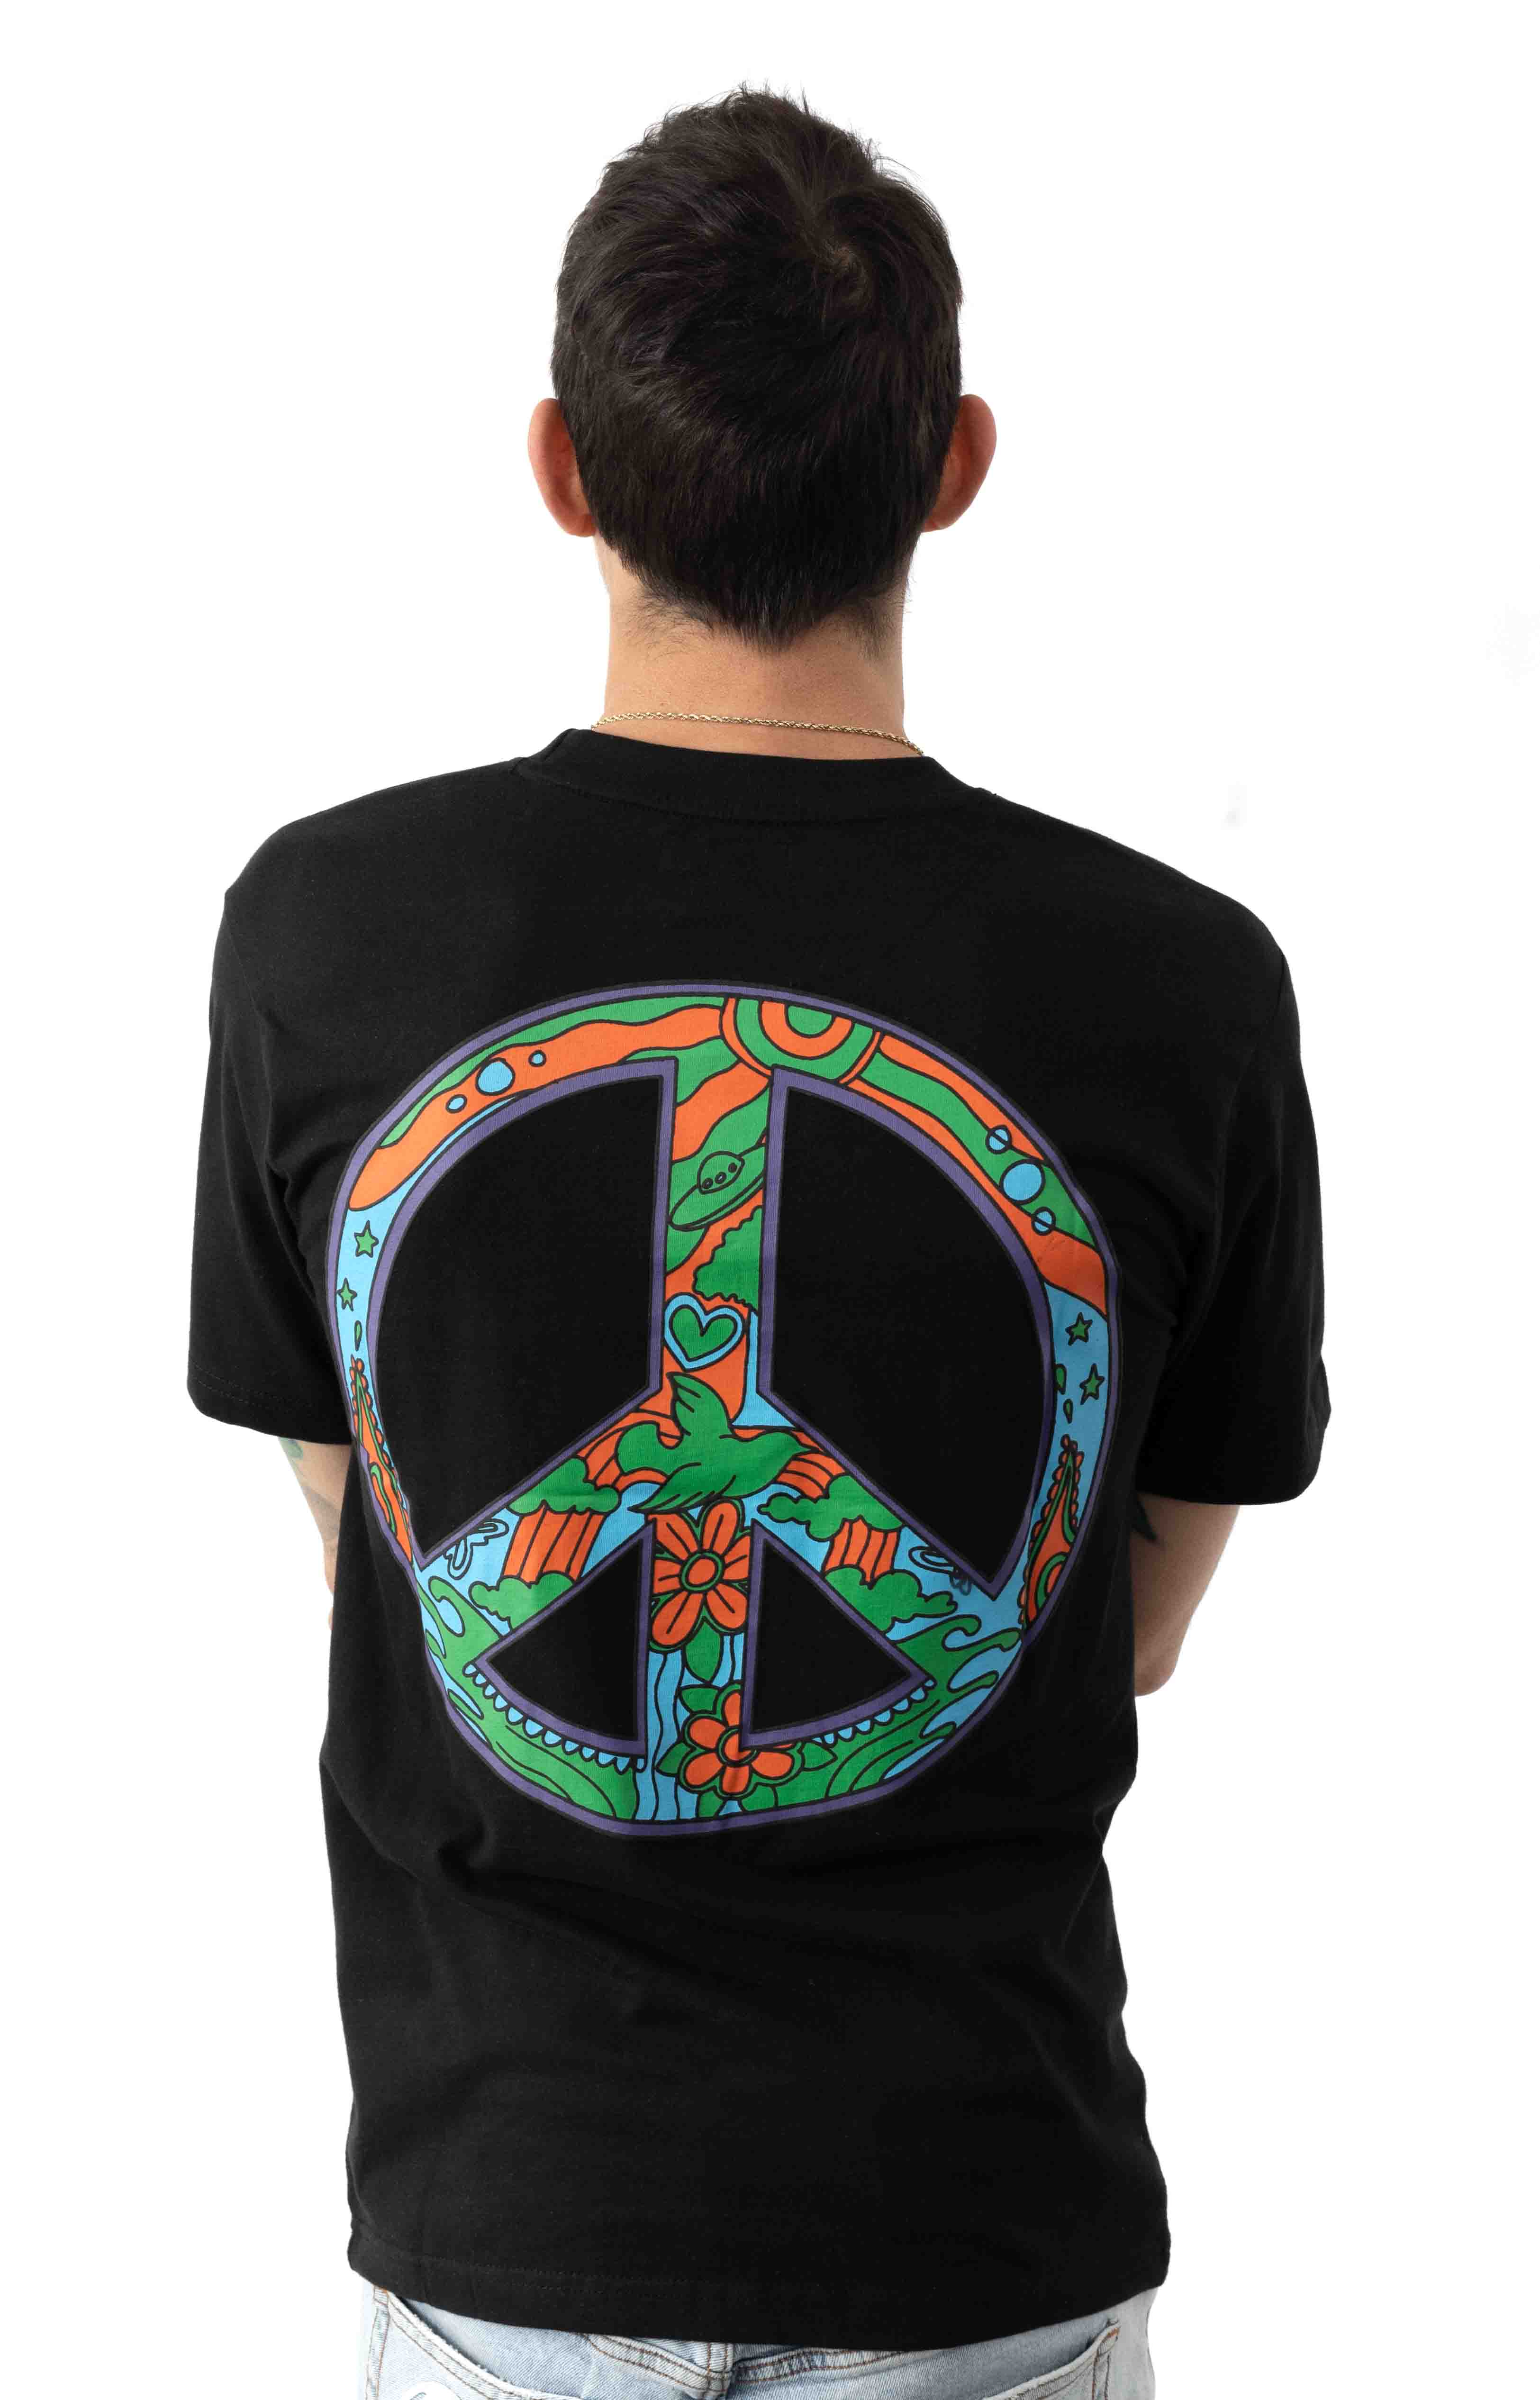 Hippie T-Shirt - Black